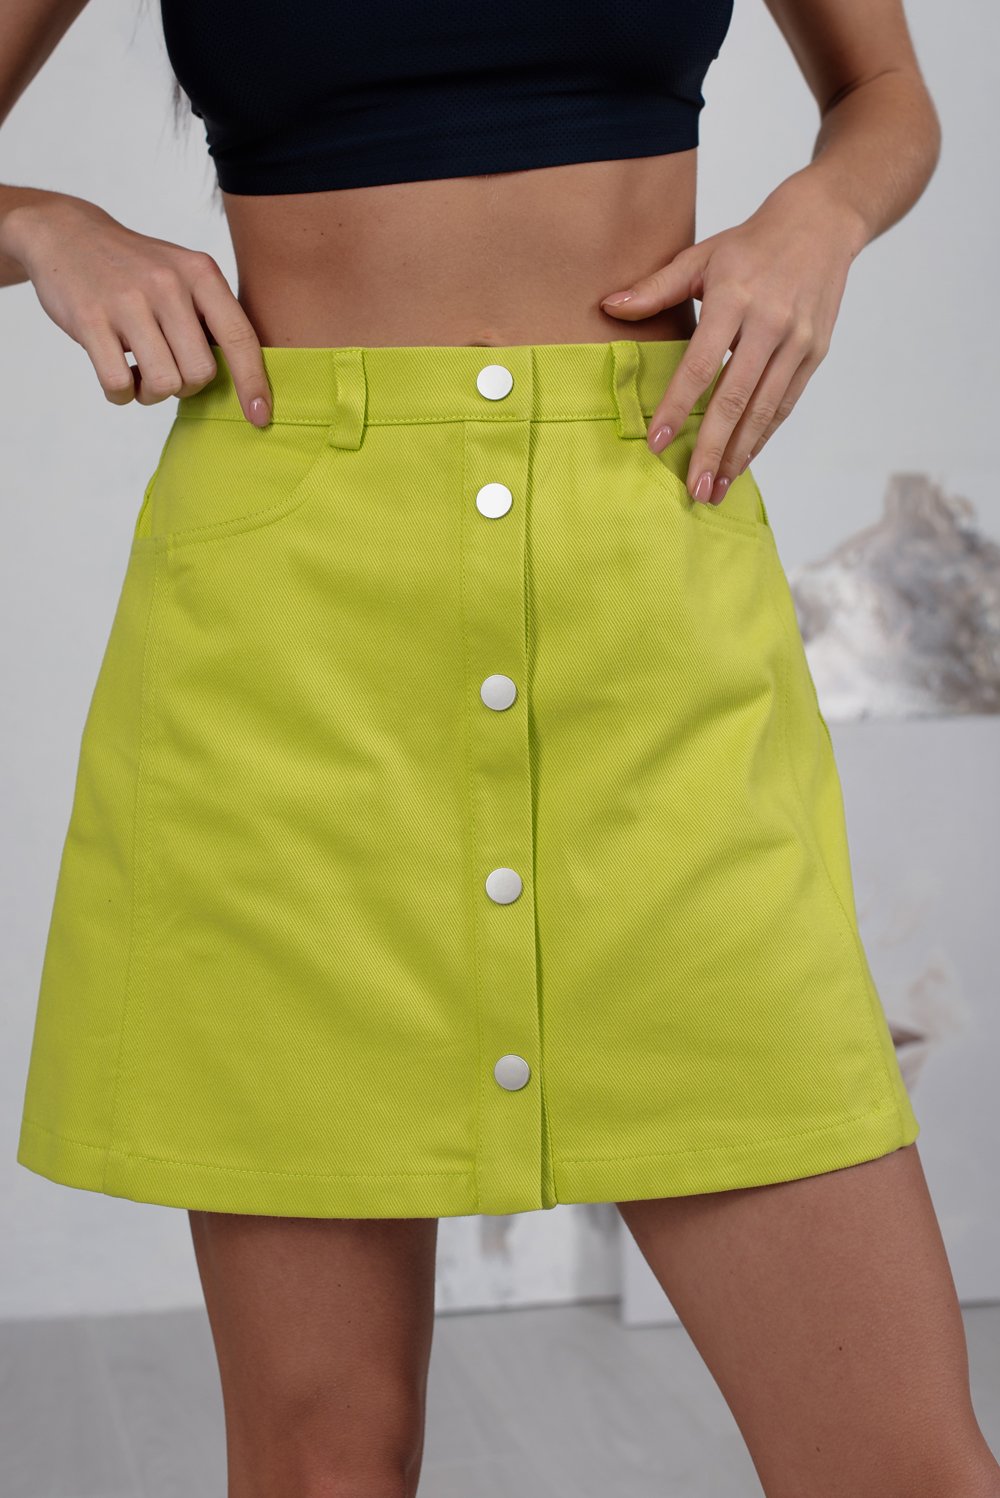 Джинсовая мини юбка на заклепках с карманами